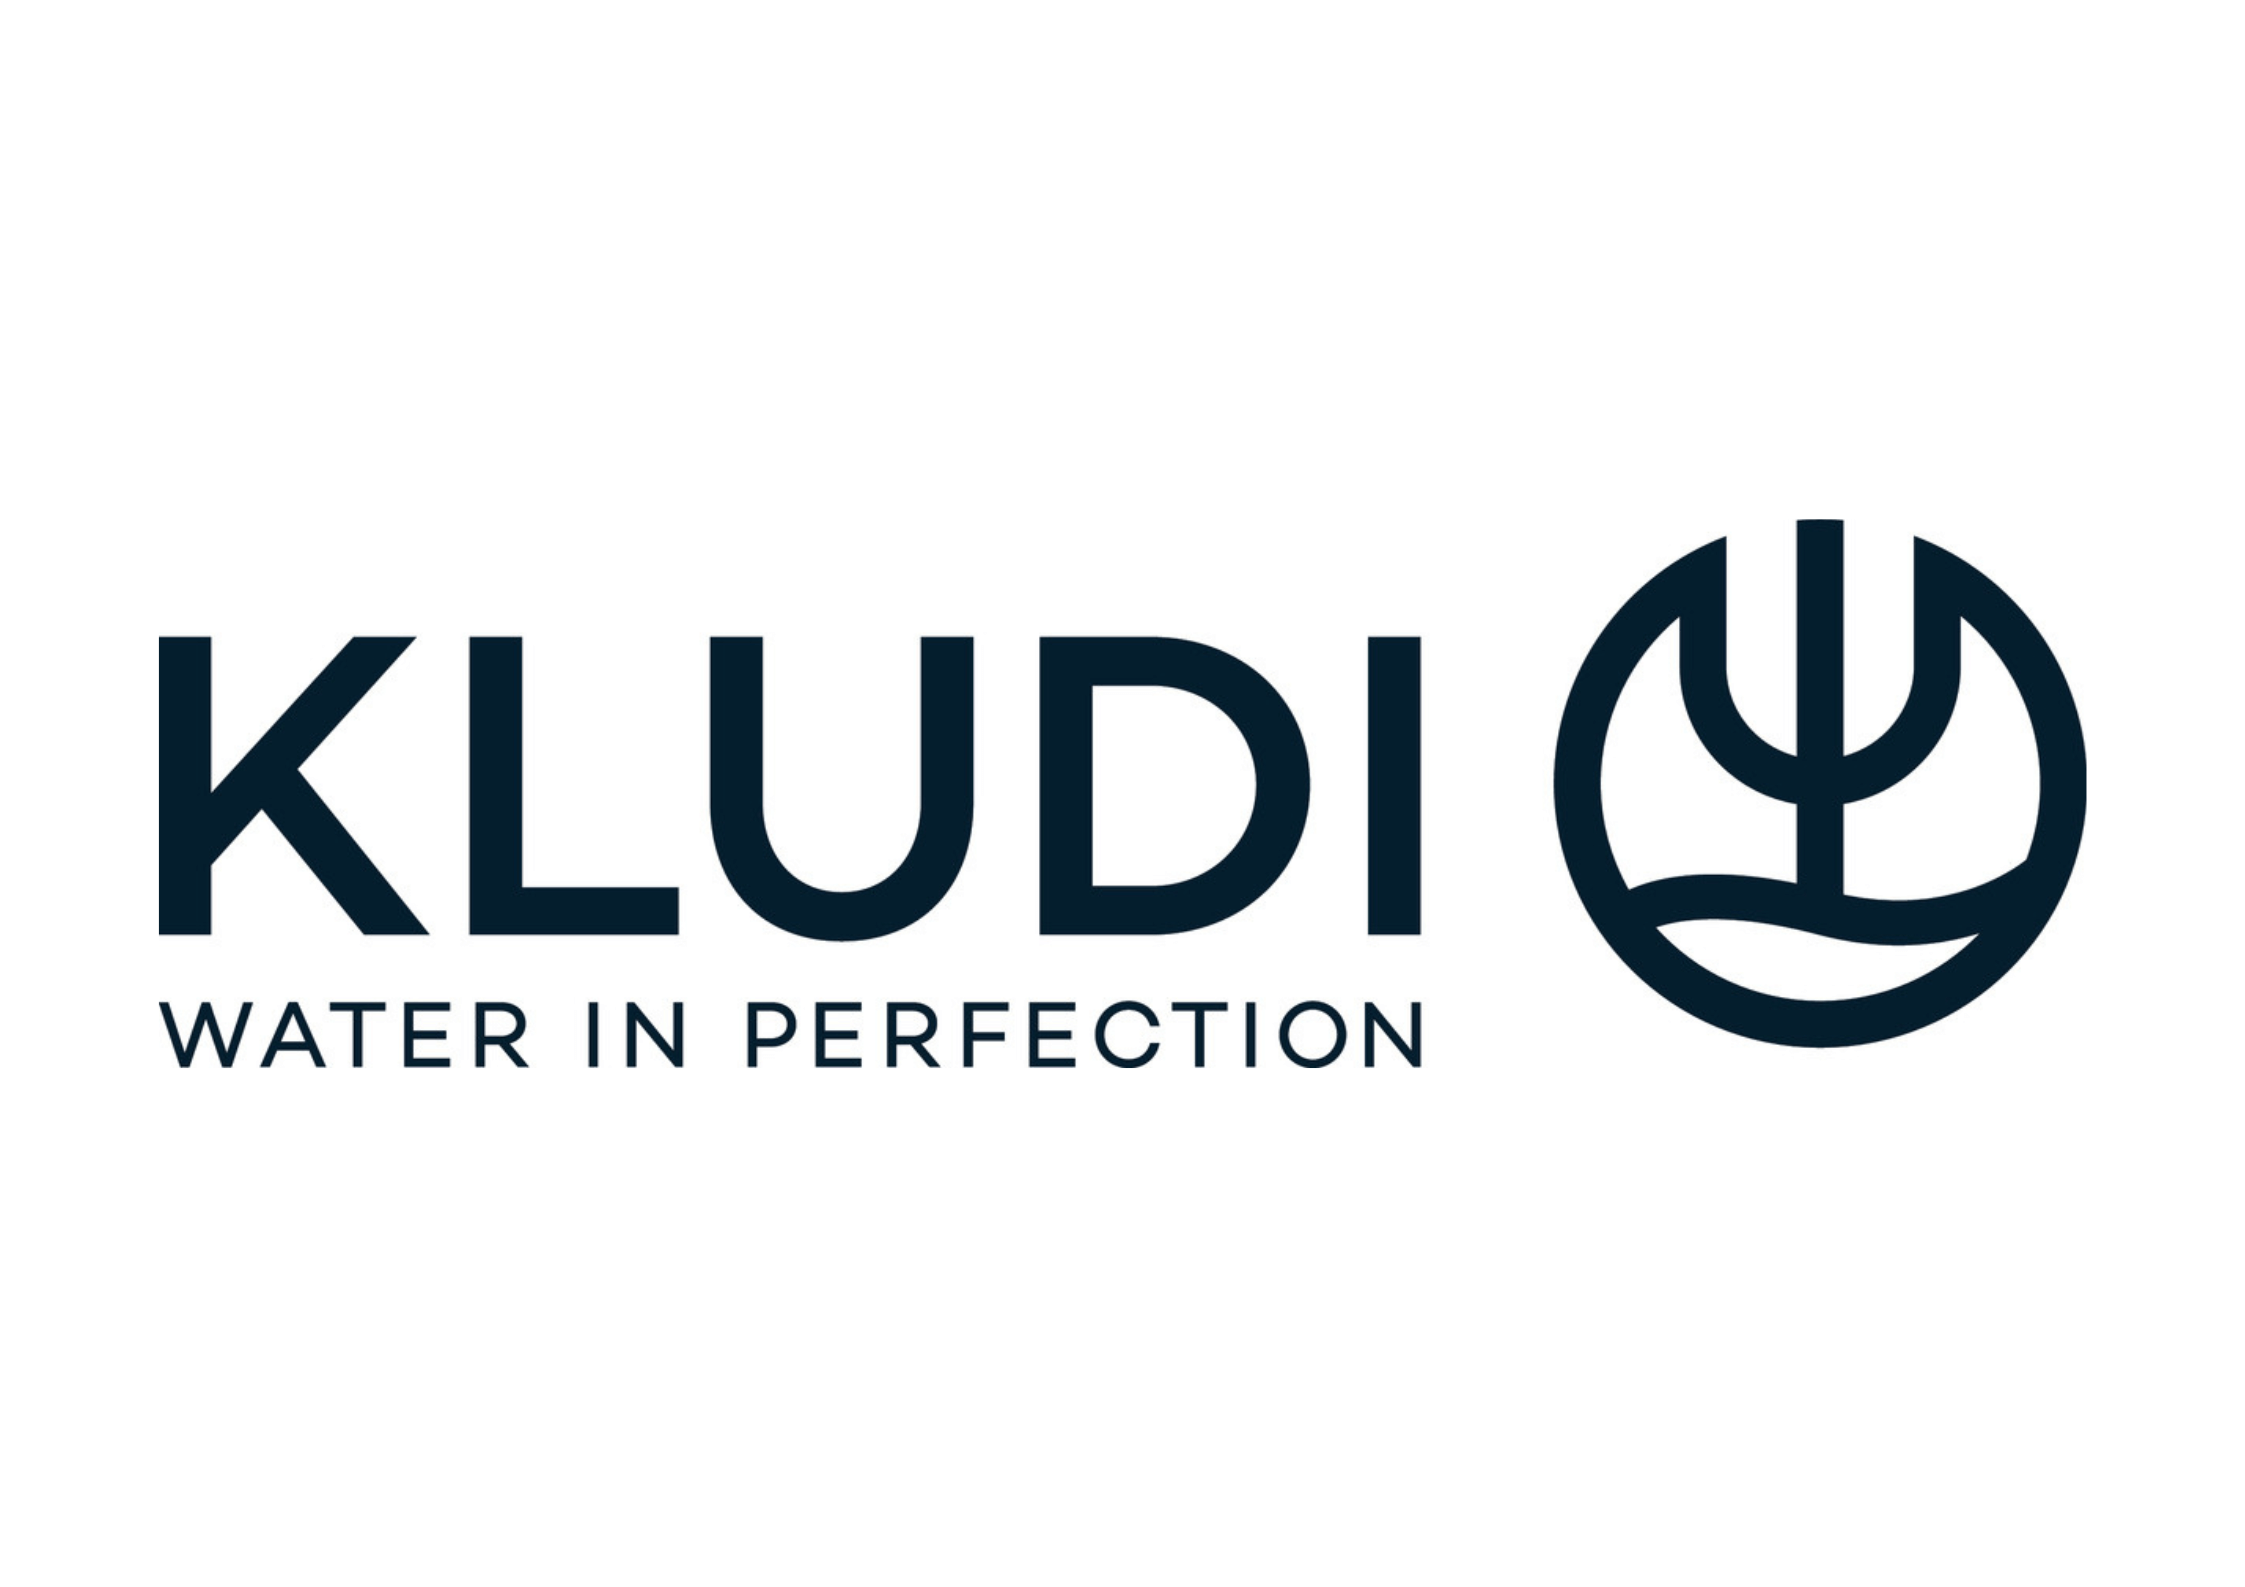 Logo KLUDI